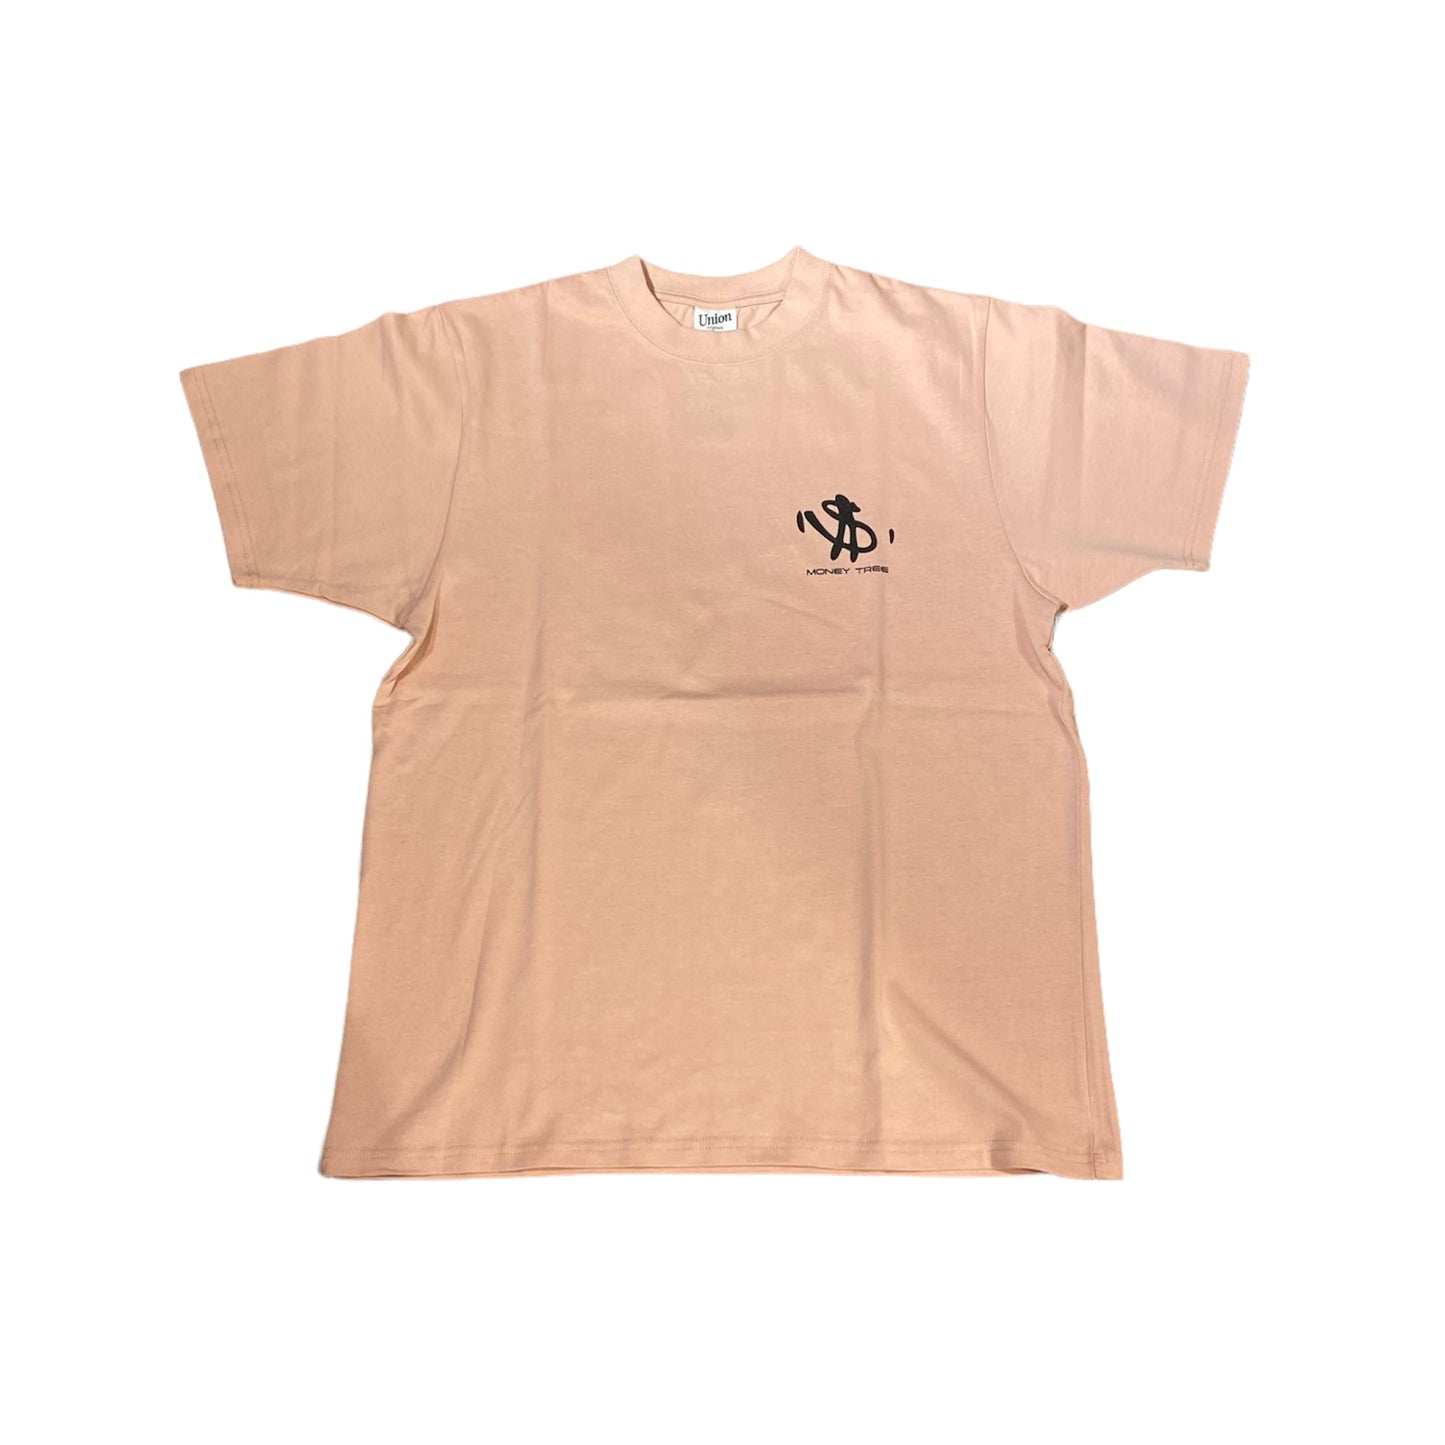 【UNION originals- ユニオンオリジナルス】Money Tree T-Shirt / Pink(マネーツリーTシャツ/ピンク)